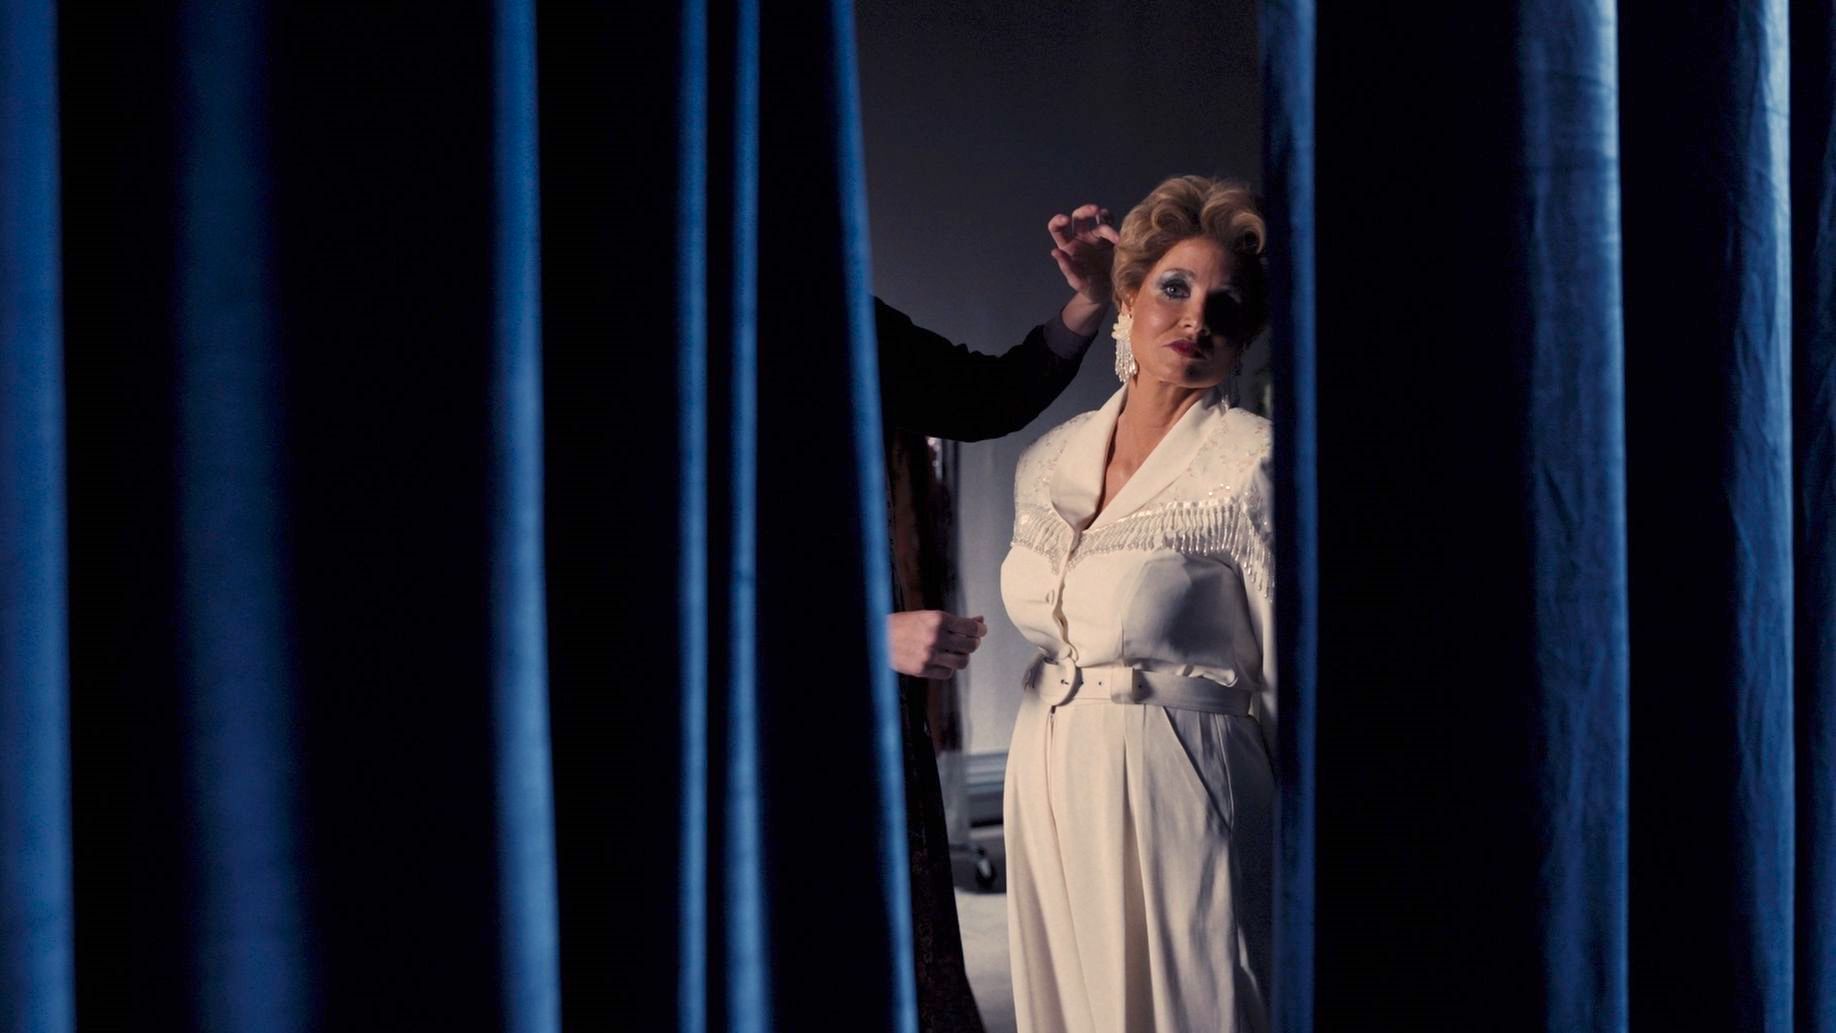 Cena do filme Os Olhos de Tammy Faye, mostra a personagem principal se olhando por entre duas cortinas azuis. Ela é uma mulher branca, adulta e usa roupas brancas.